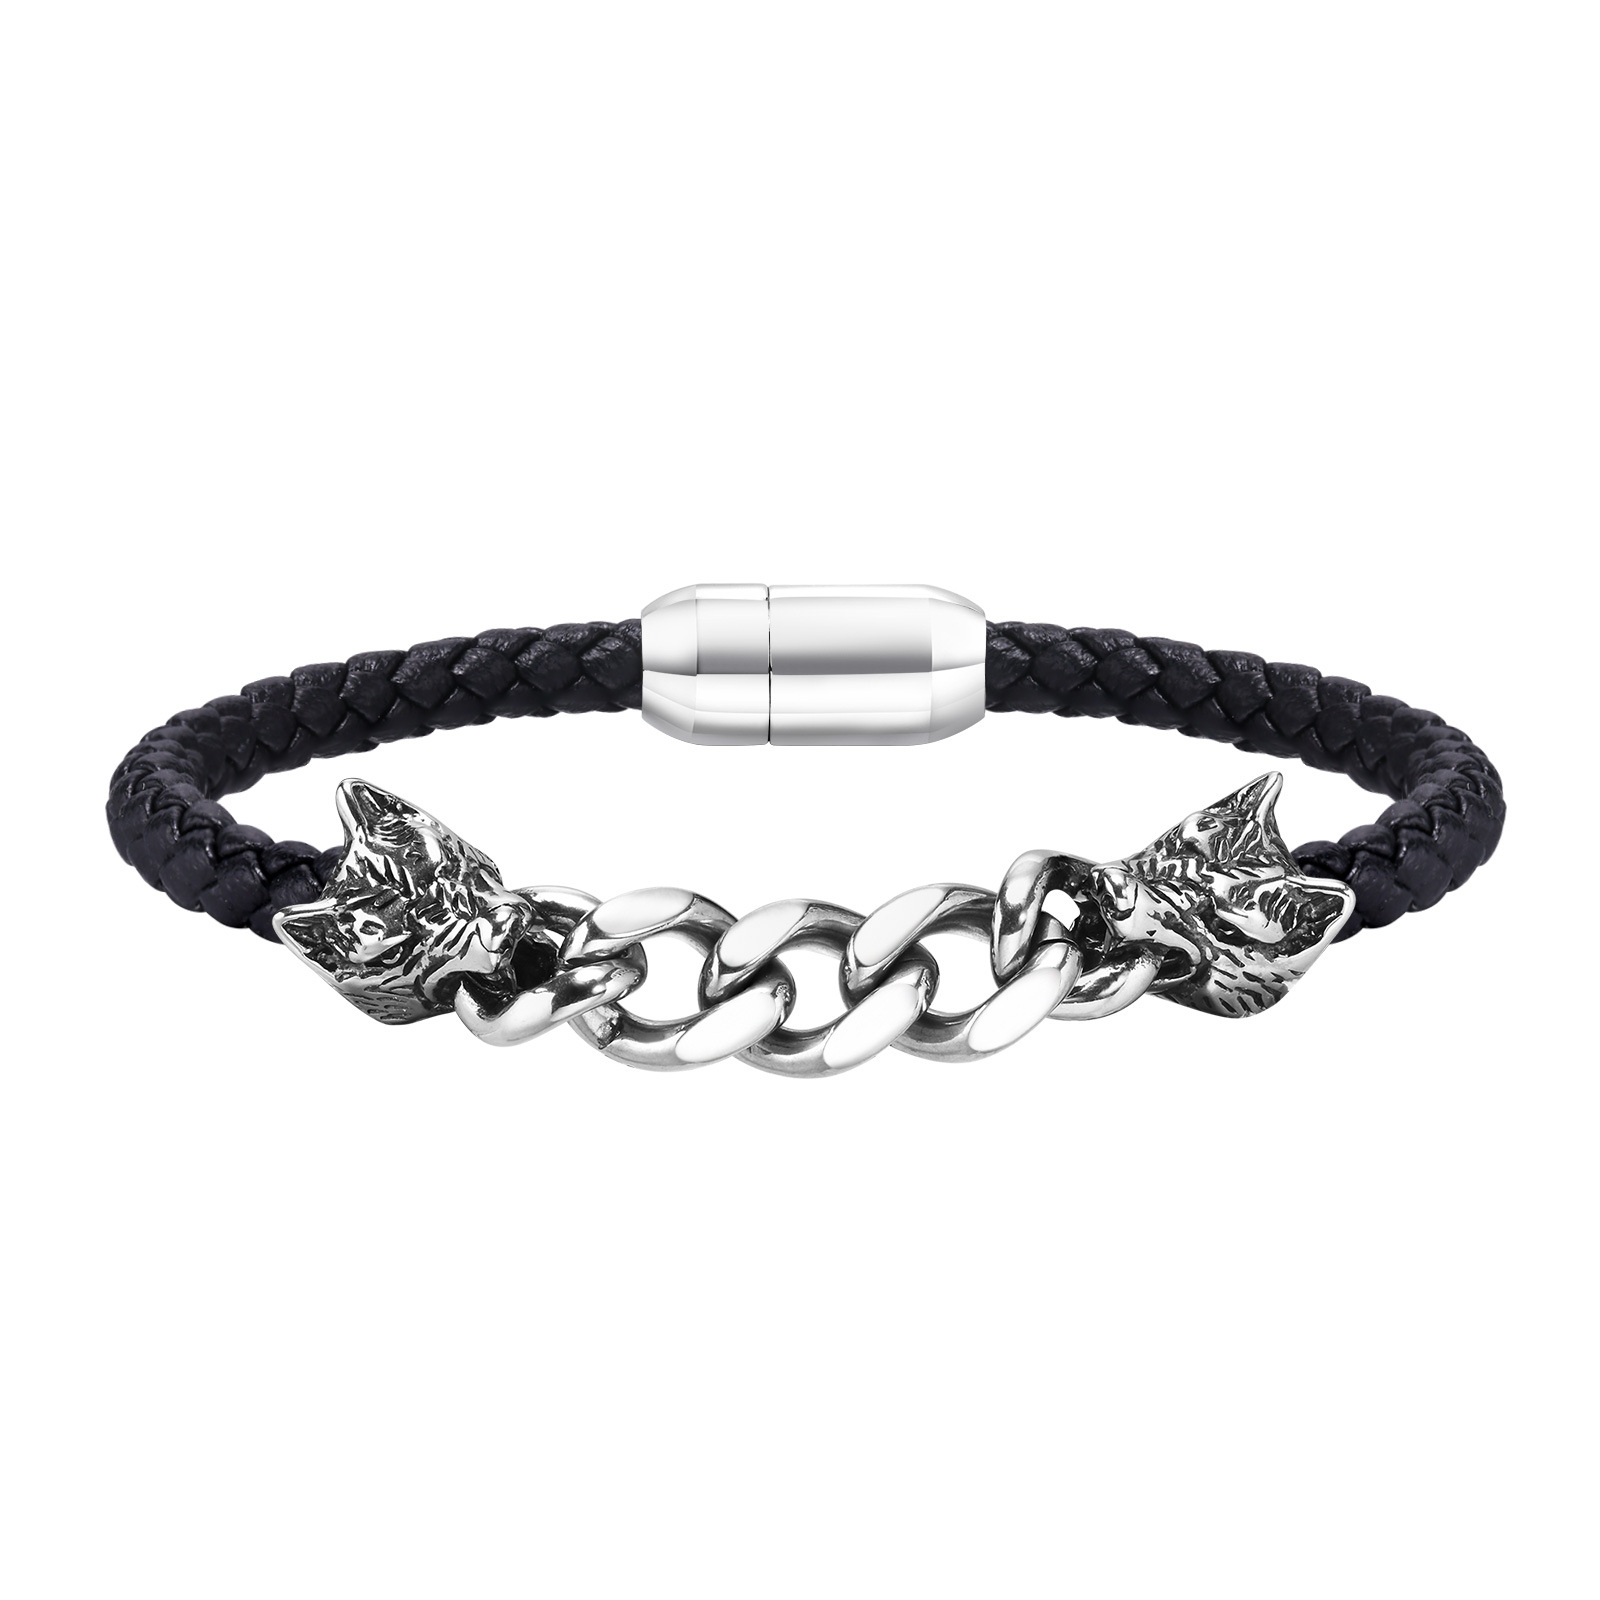 1:Wolf's head bracelet